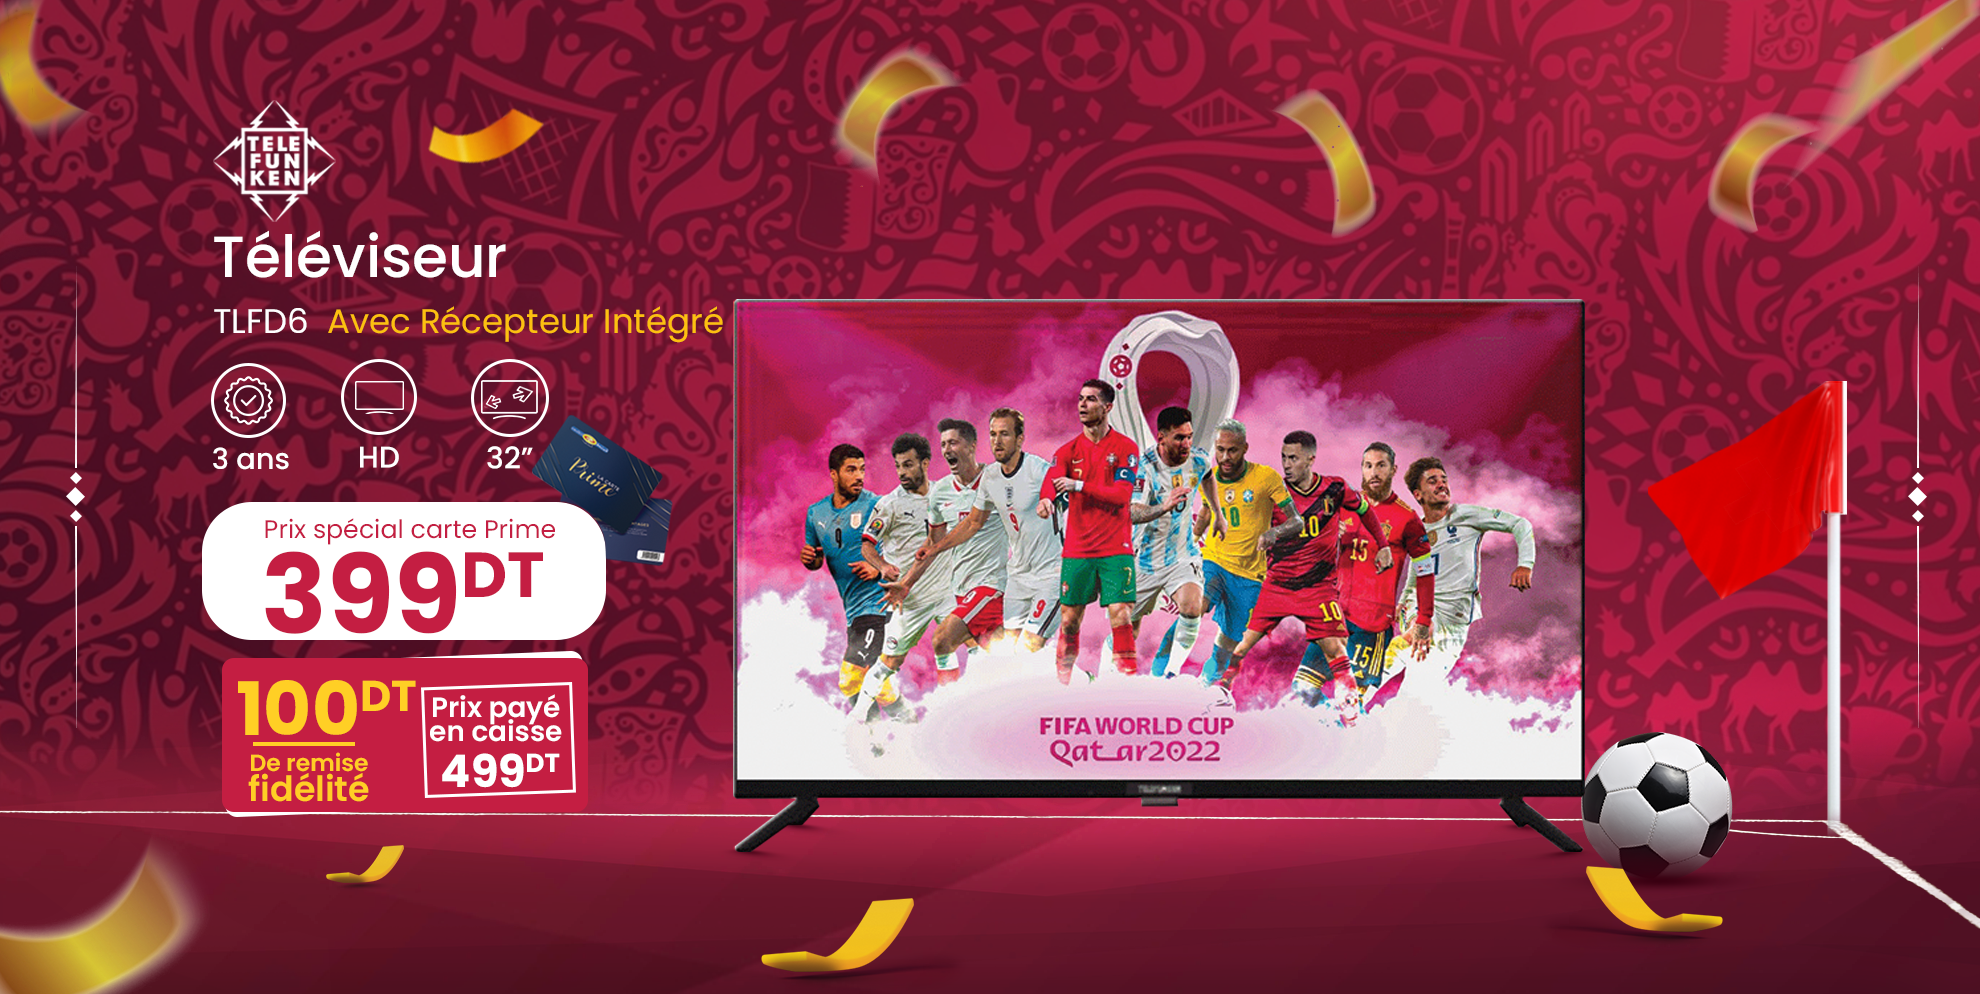 Spéciale Coupe du Monde Qatar 2022™